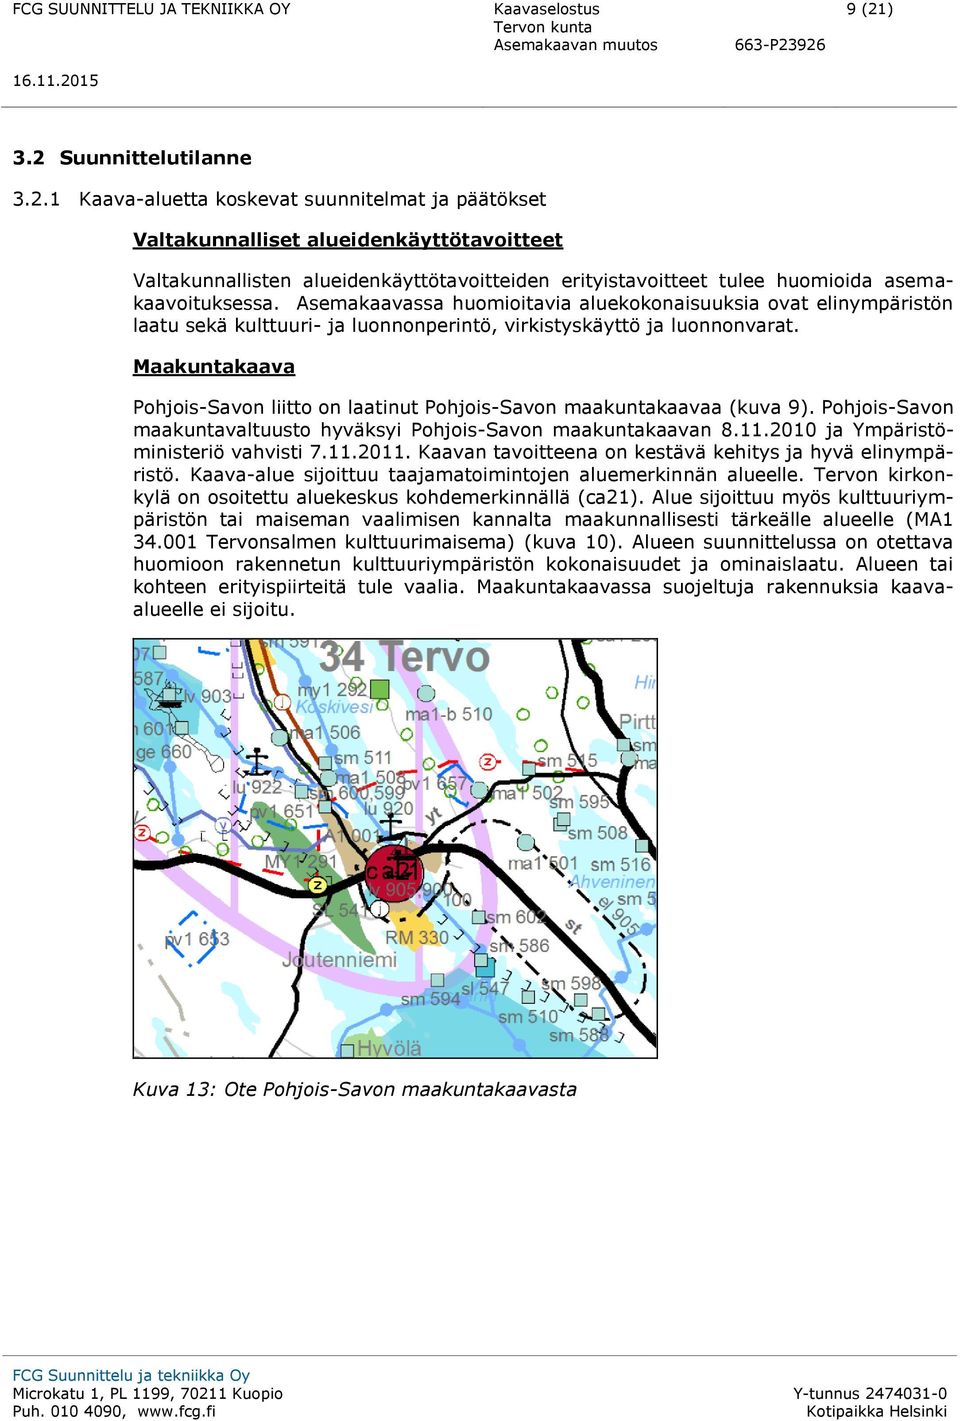 Maakuntakaava Pohjois-Savon liitto on laatinut Pohjois-Savon maakuntakaavaa (kuva 9). Pohjois-Savon maakuntavaltuusto hyväksyi Pohjois-Savon maakuntakaavan 8.11.2010 ja Ympäristöministeriö vahvisti 7.